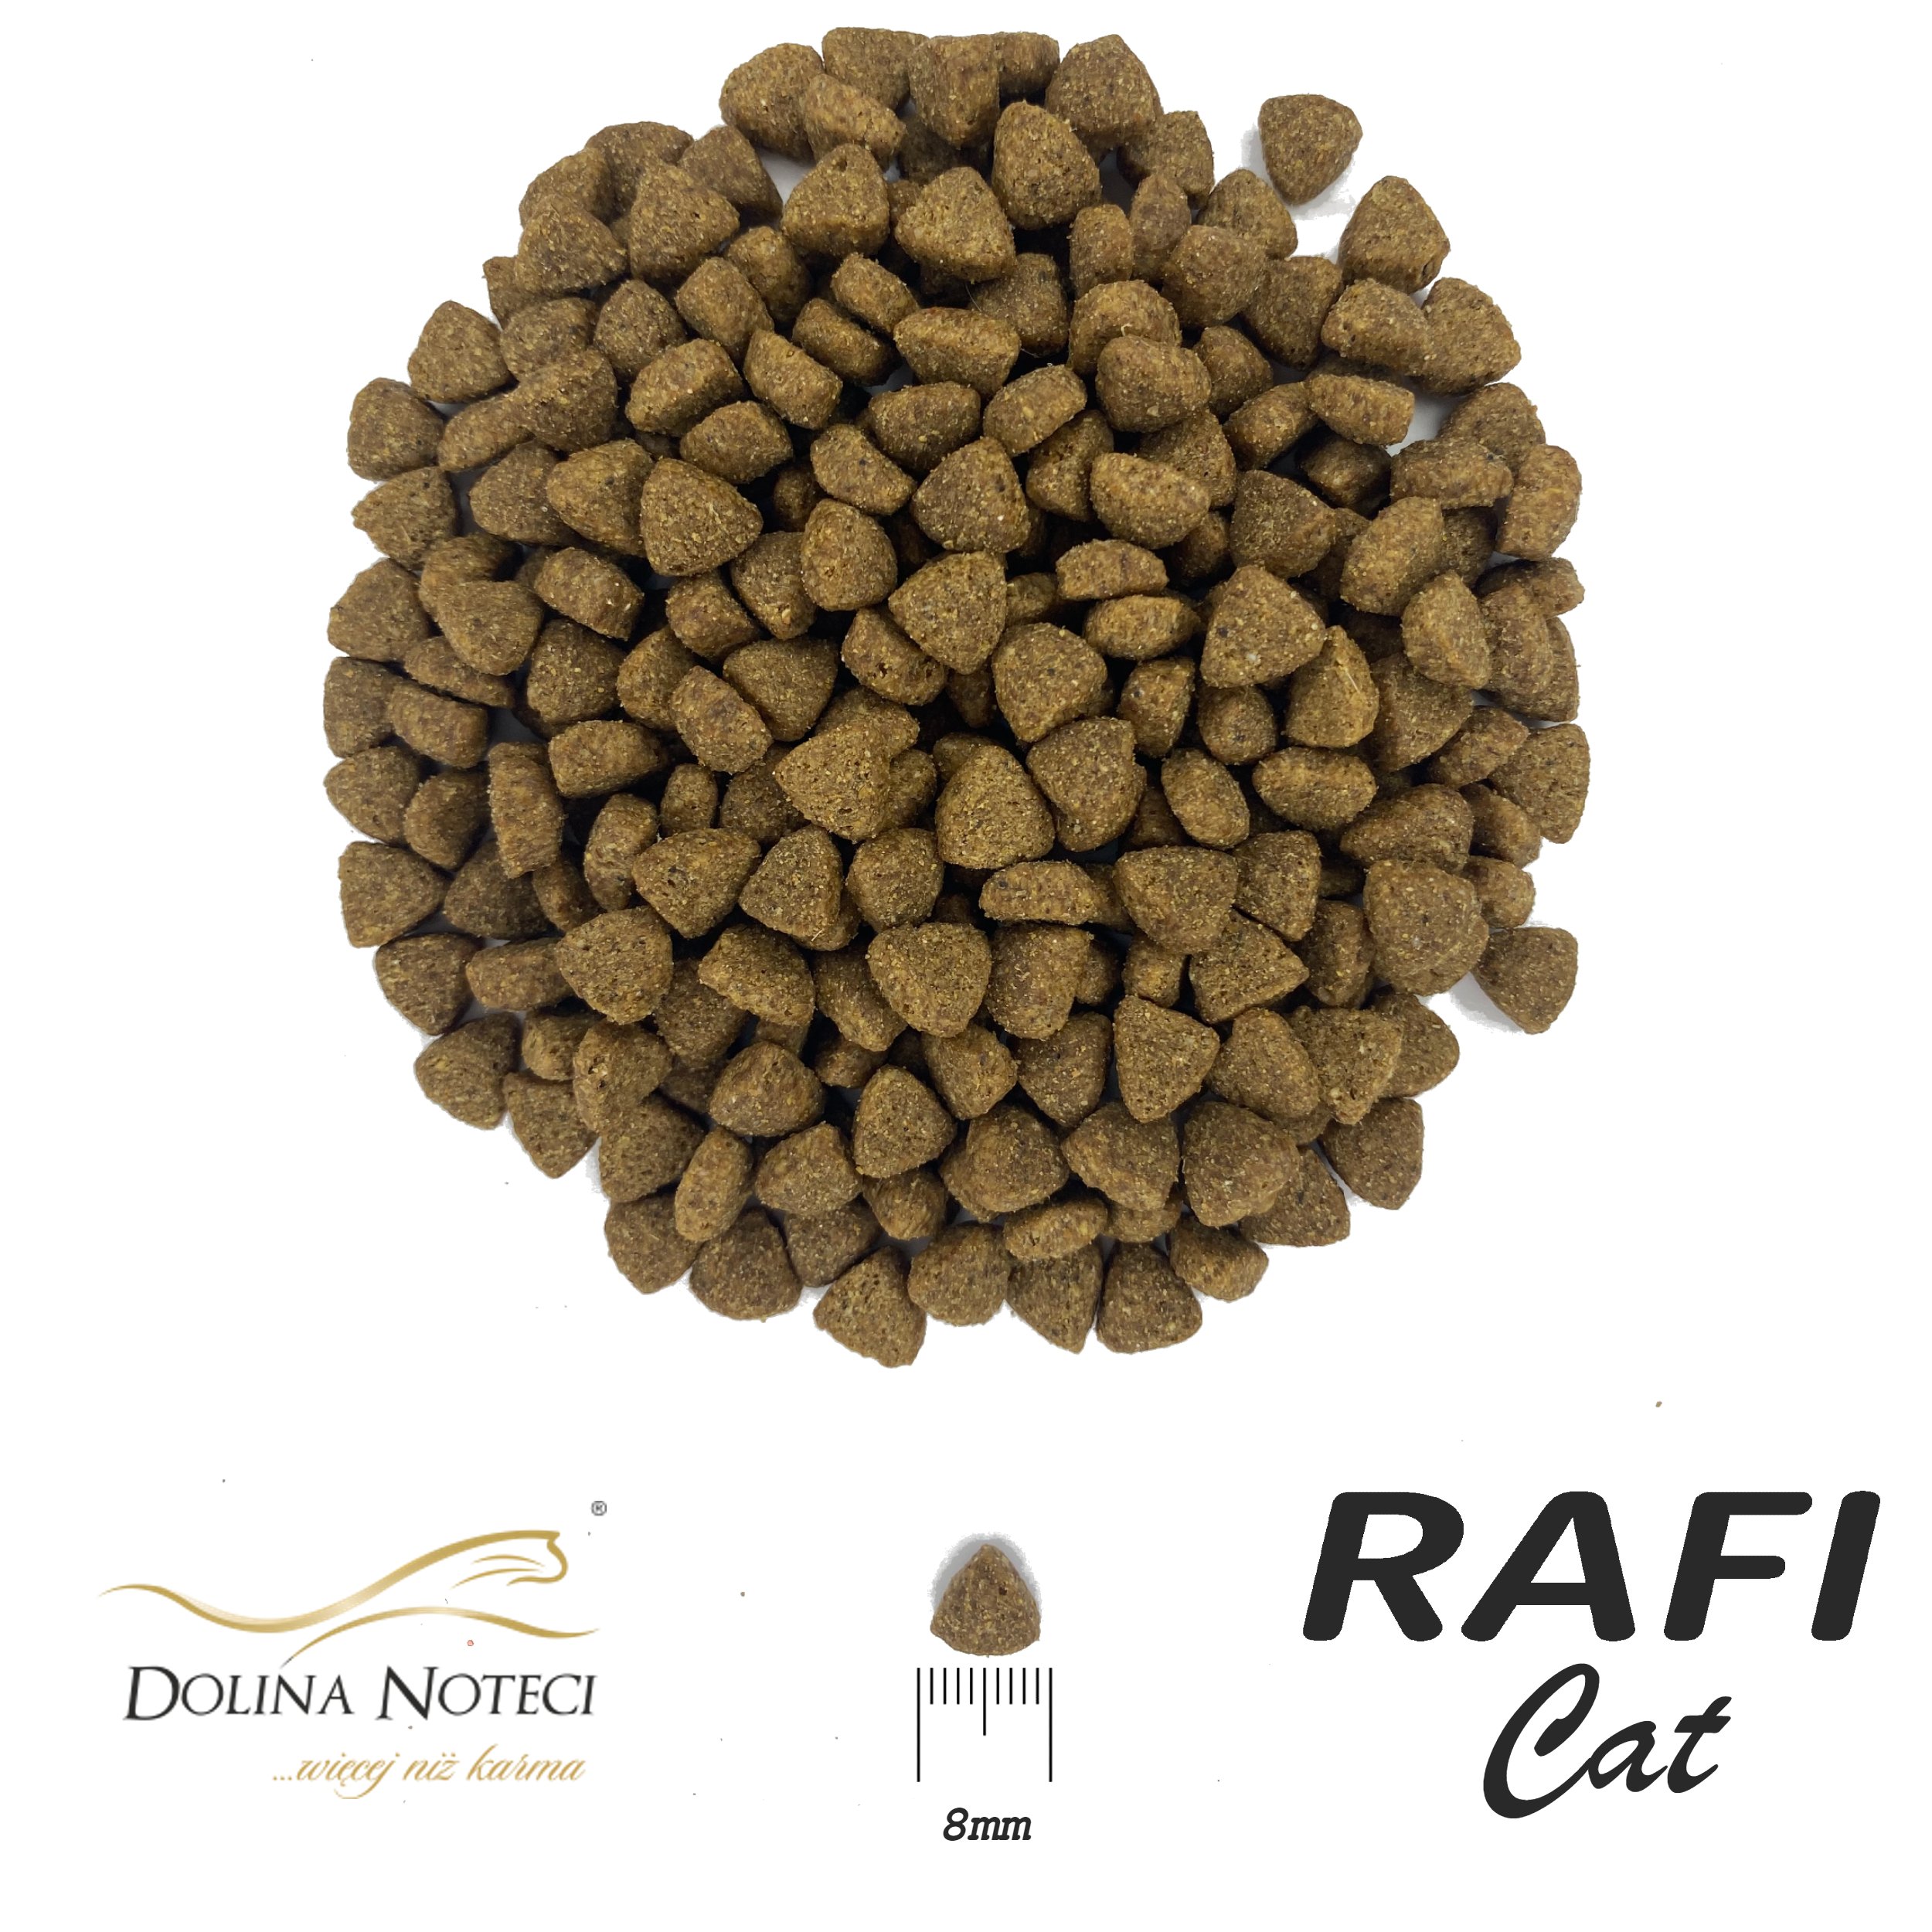 Сухой корм для взрослых котов Dolina Noteci Rafi Сat с говядиной 7 кг - фото 2